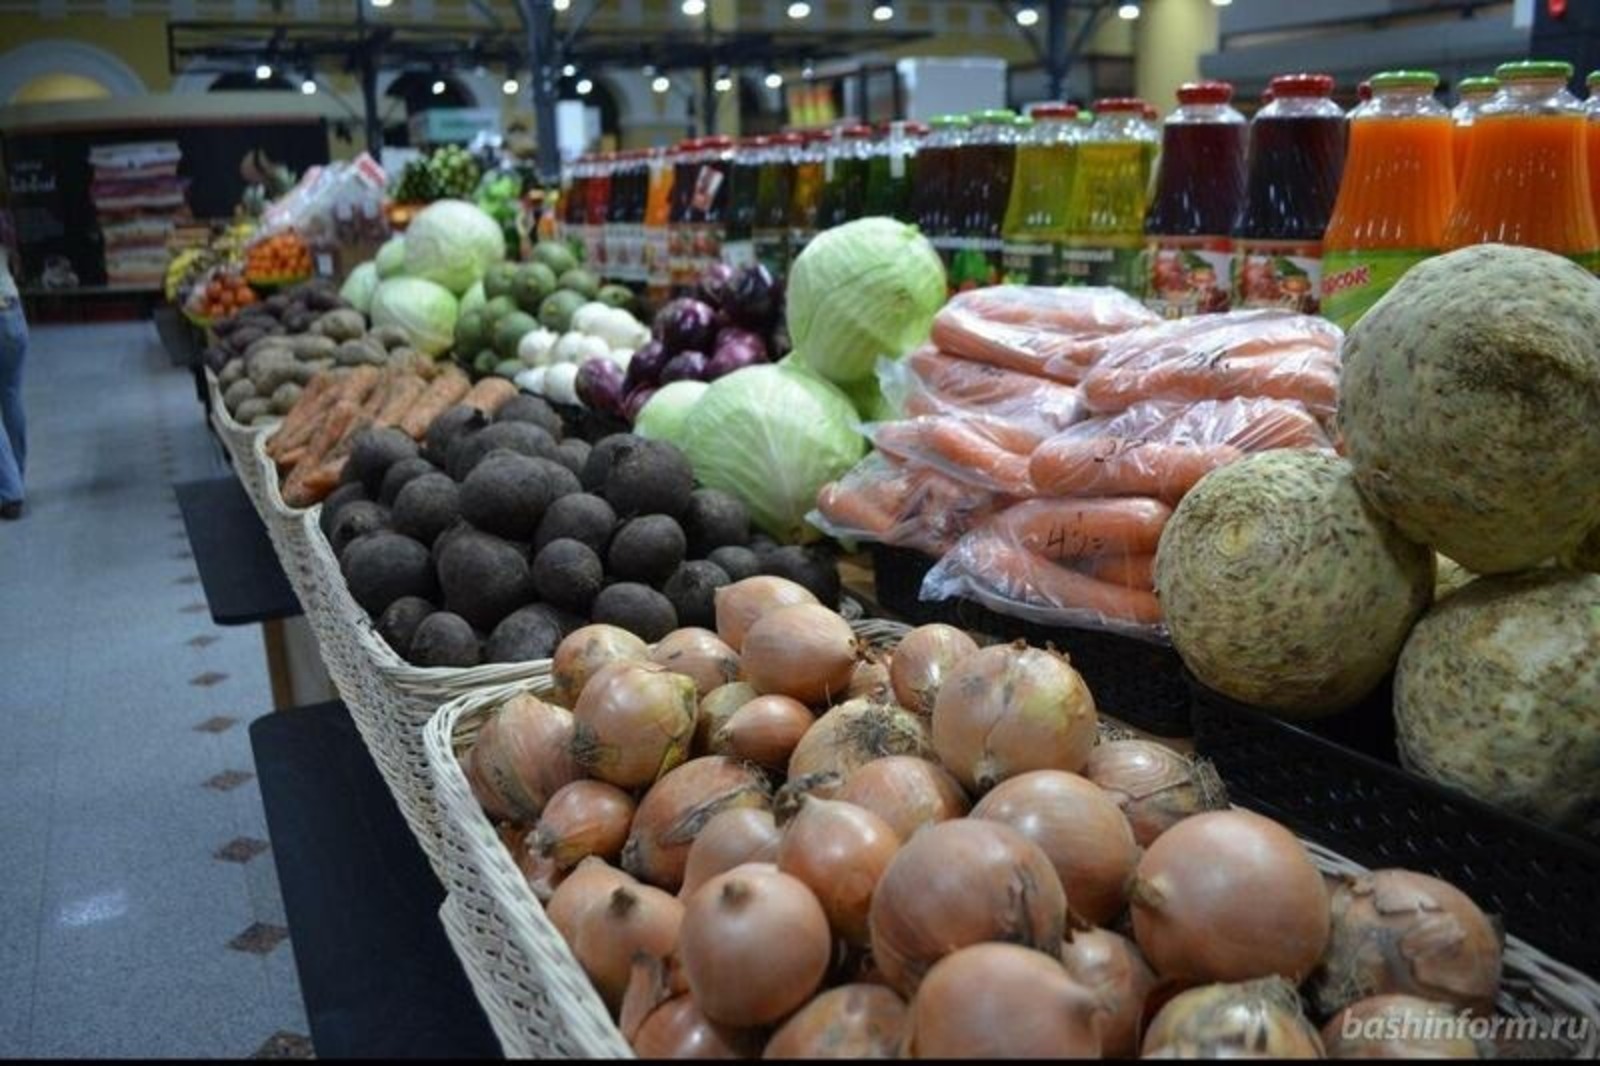 В Башкирии остановился рост цен на продукты, некоторые из них даже подешевели